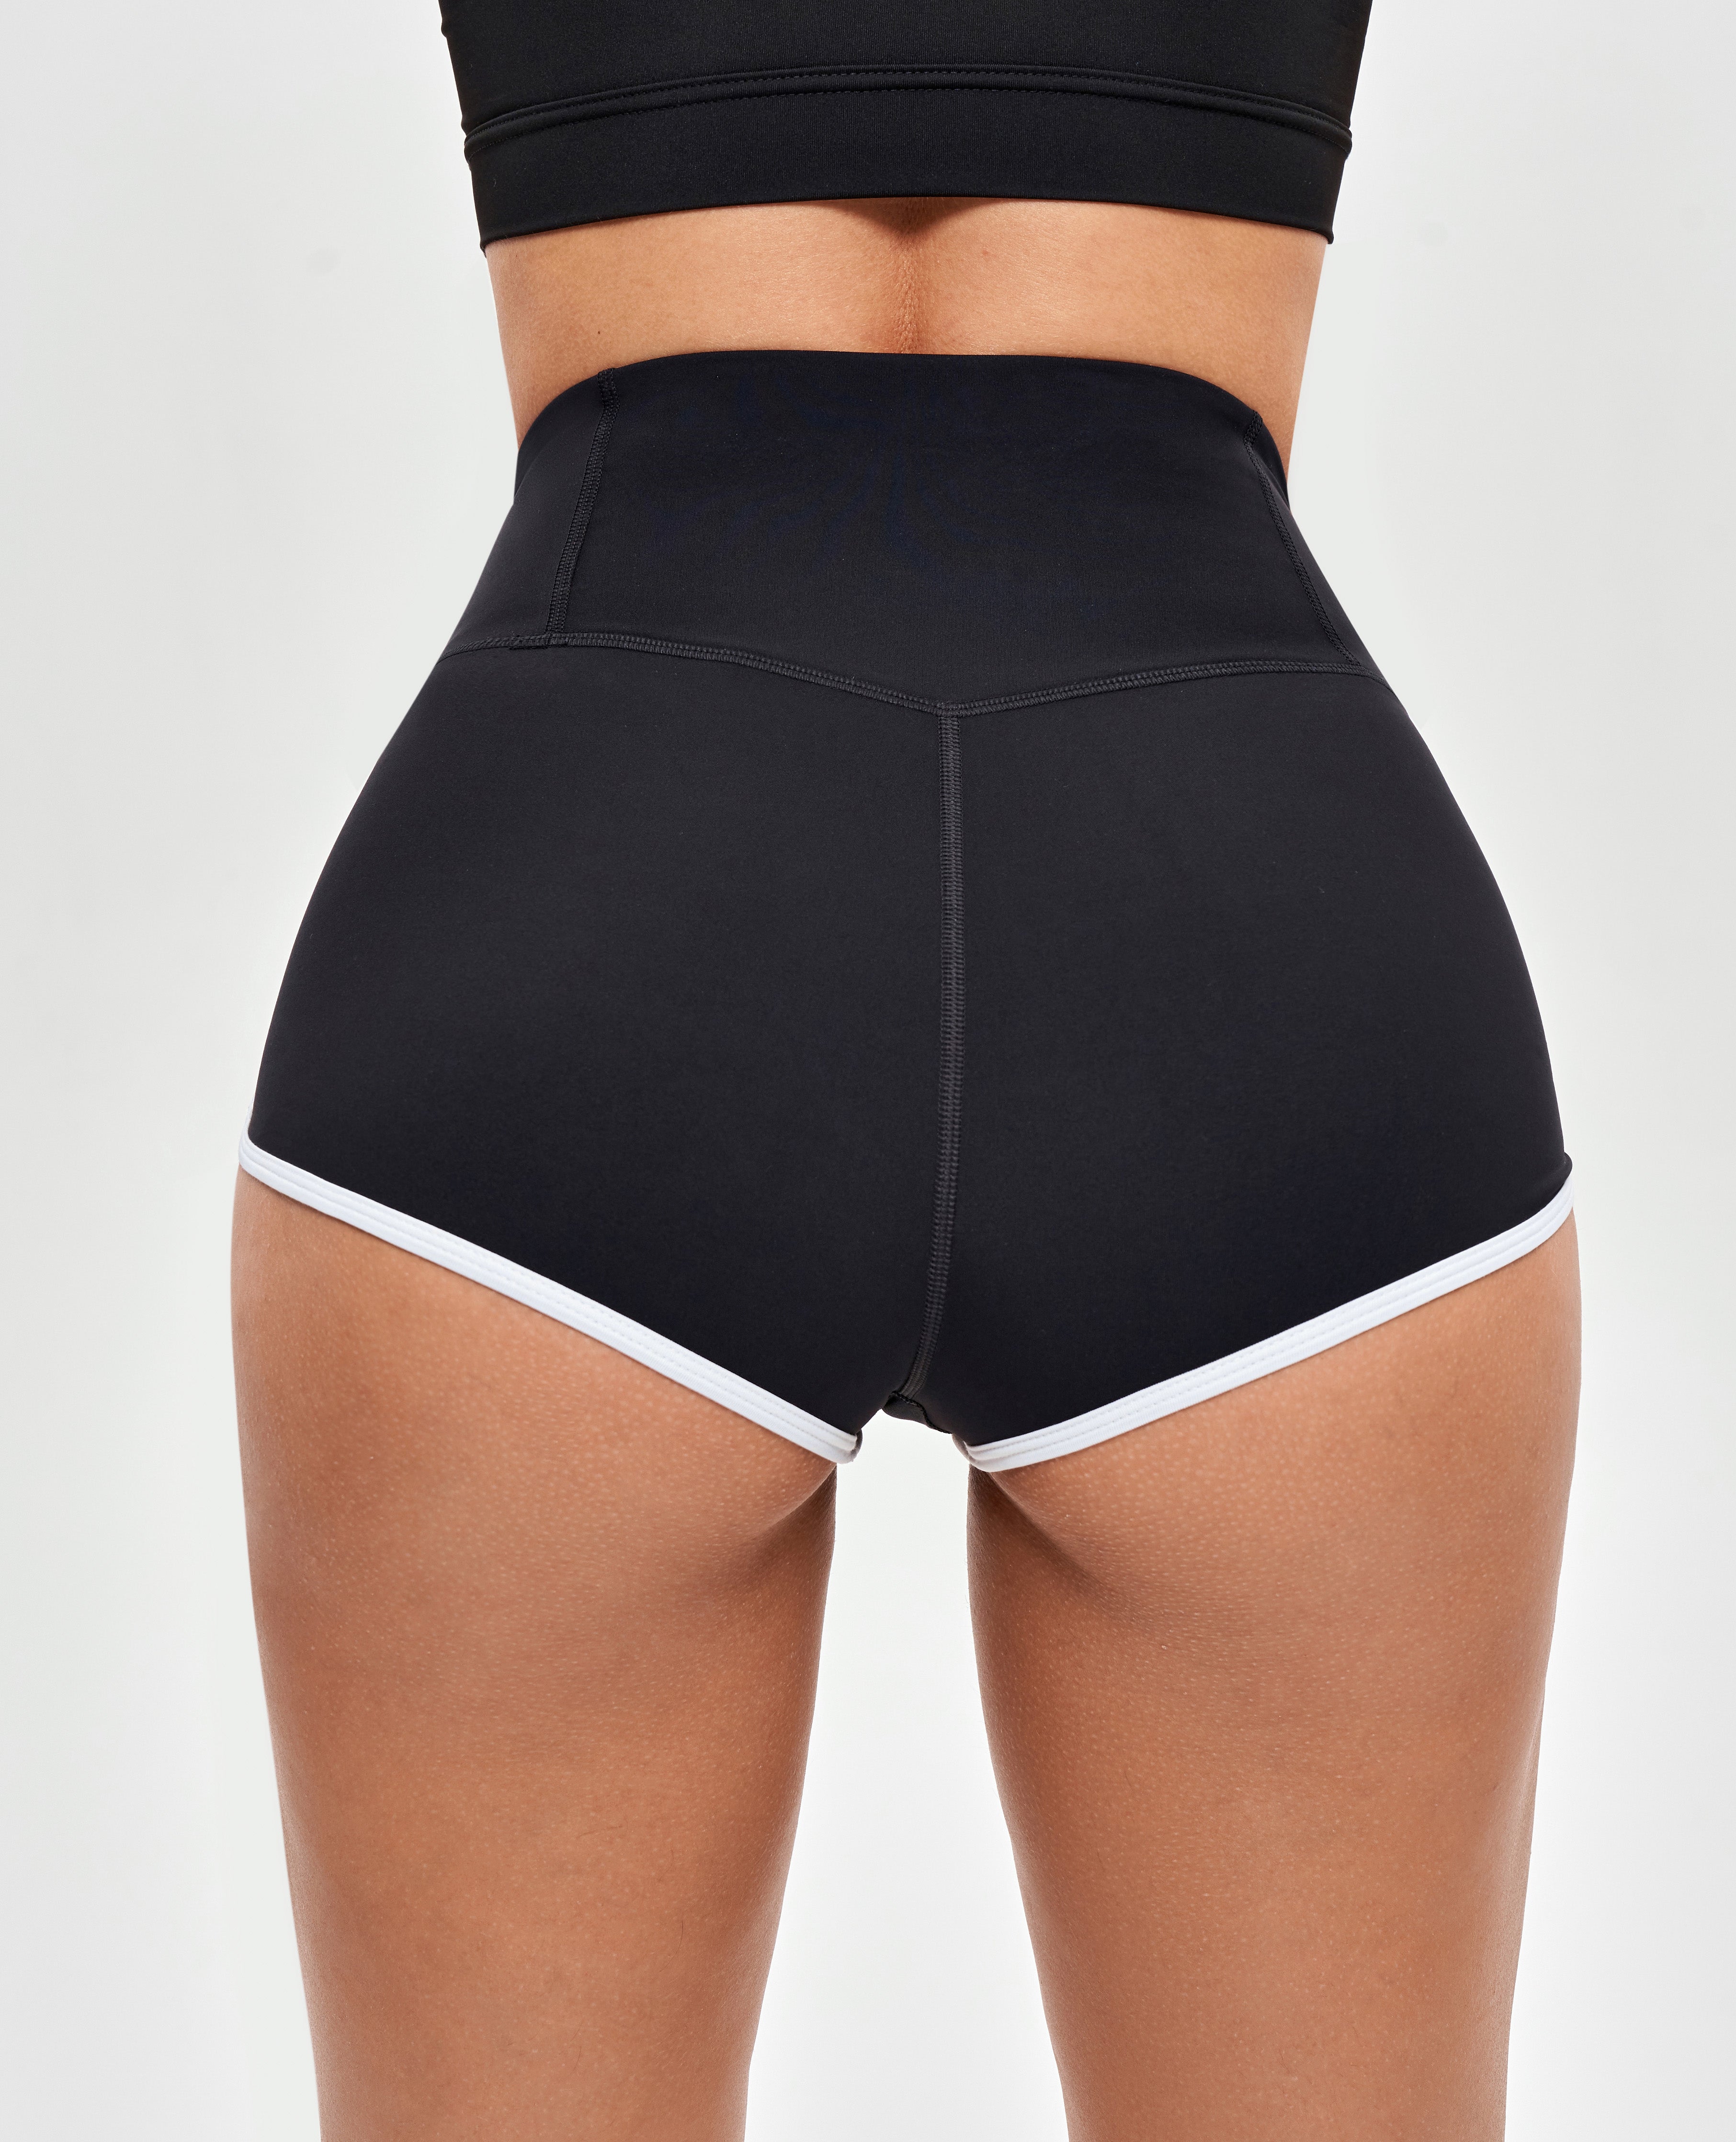 V-waist Lifting Butt Shorts - Black